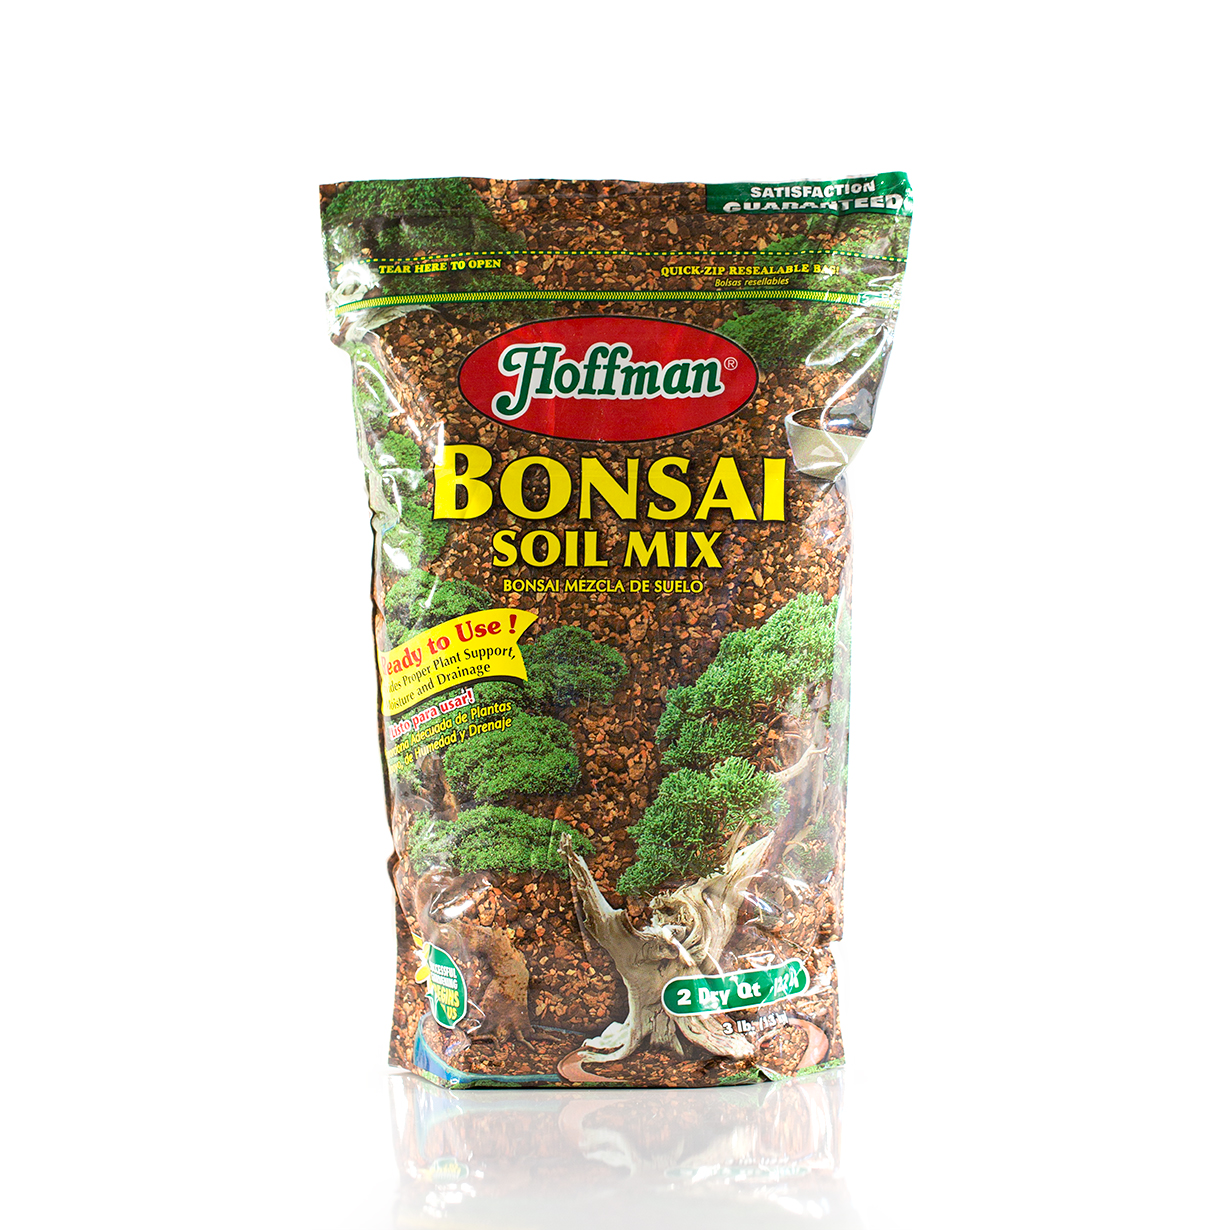 Hoffman Bonsai Soil Mix